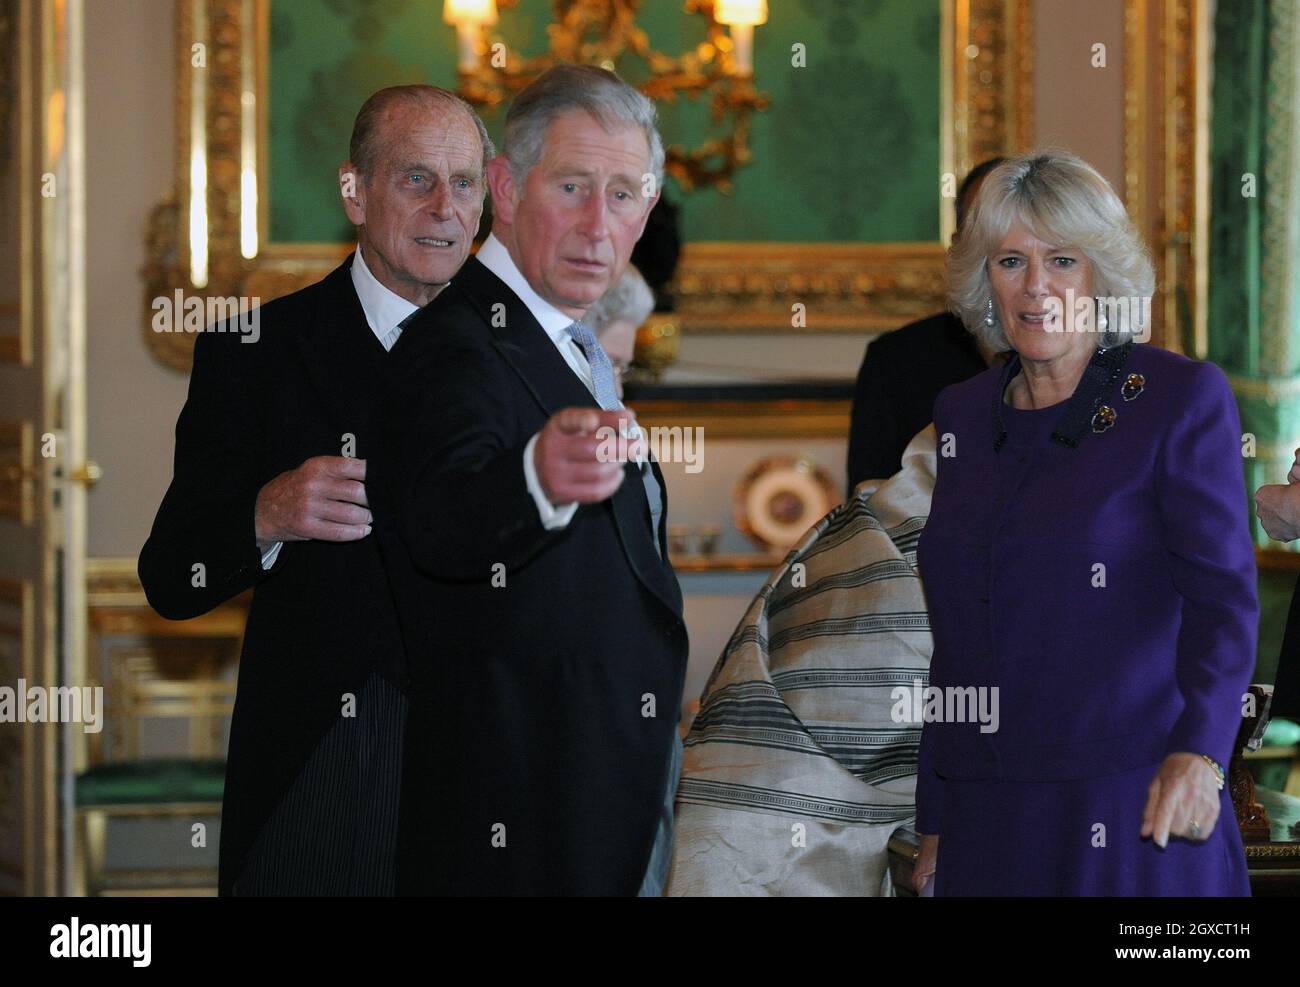 Prinz Charles, Prinz von Wales, Camilla, Herzogin von Cornwall und Prinz Philip, Herzog von Edinburgh zeigen auf Gegenstände, während sie eine Ausstellung im Weißen Zeichenraum im Schloss Windsor zu Beginn eines Staatsbesuchs des indischen Präsidenten Pratibha Patil am 27. Oktober 2009 betrachten. Stockfoto